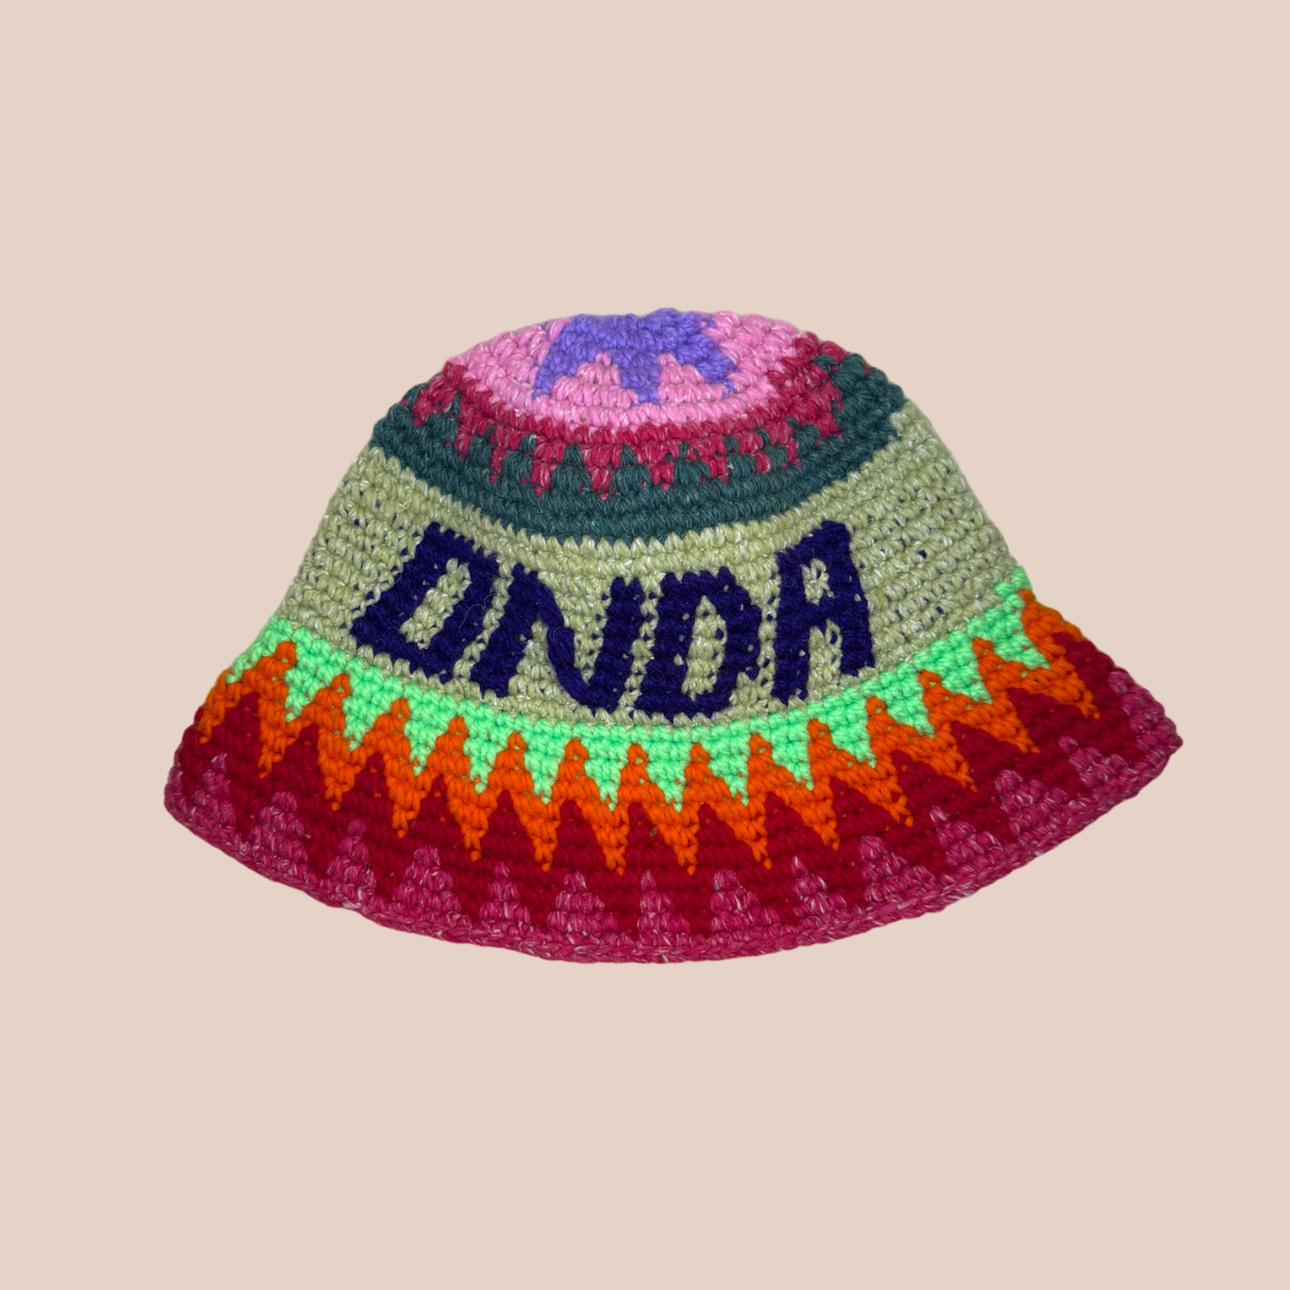 Image du bucket hat inscription BUENA et ONDA de Maison Badigo, bucket hat (bob) multicolore unique et tendance